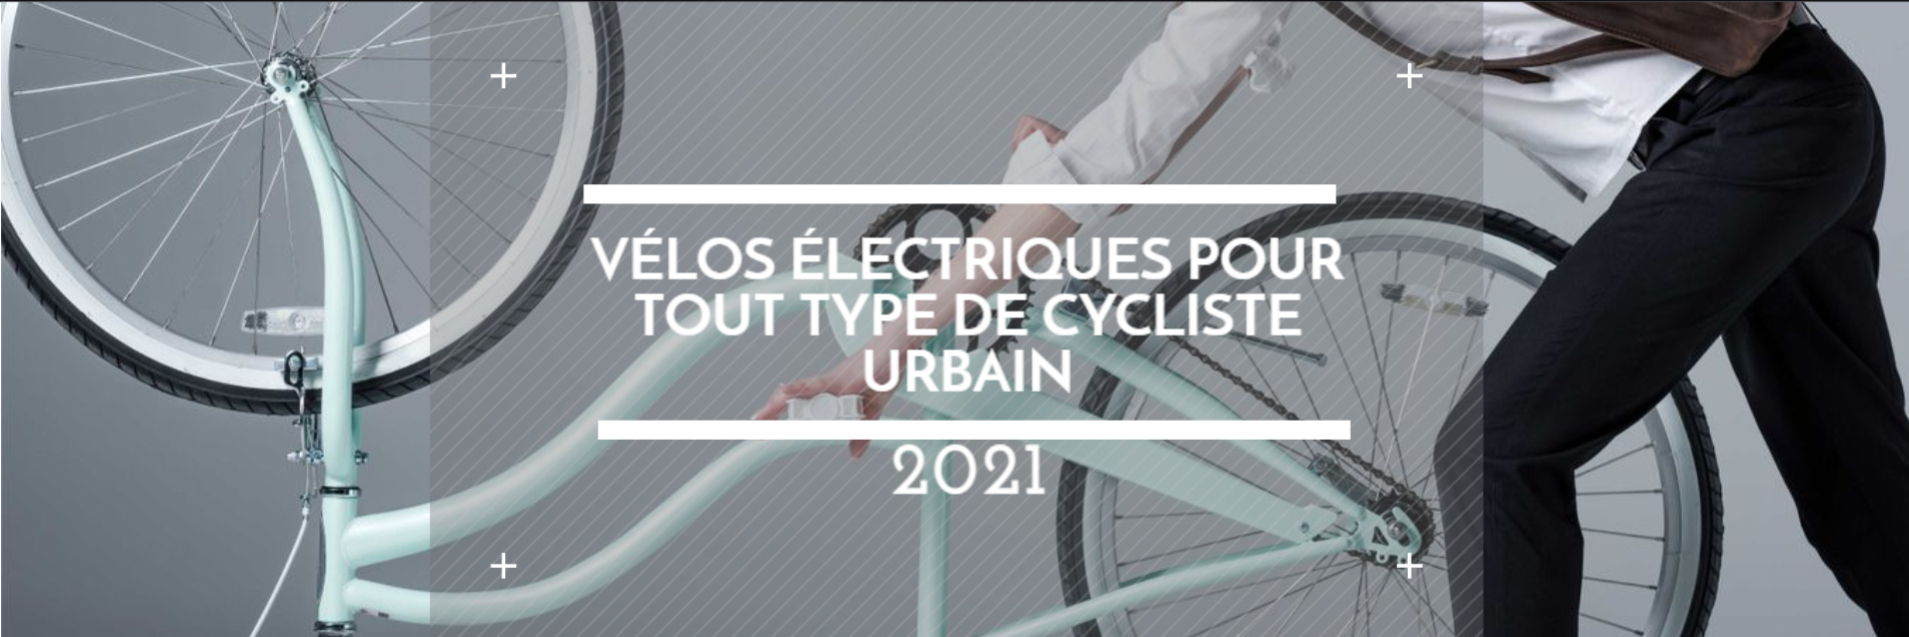 Les meilleurs vélos électriques pour tout type de cycliste urbain 2021